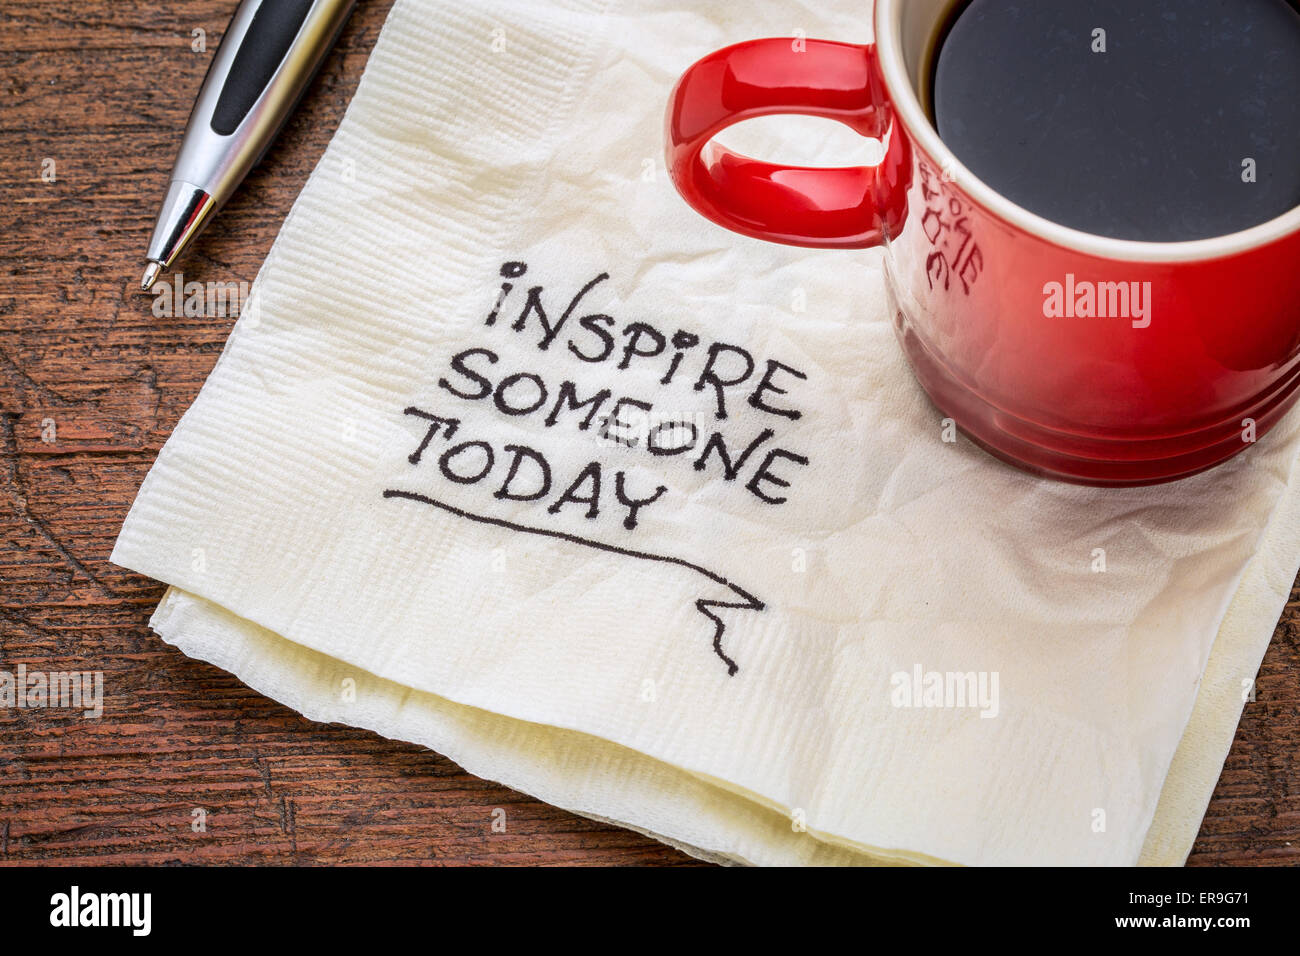 Inspirer quelqu'un aujourd'hui - l'écriture de motivation sur une serviette avec tasse de café Banque D'Images